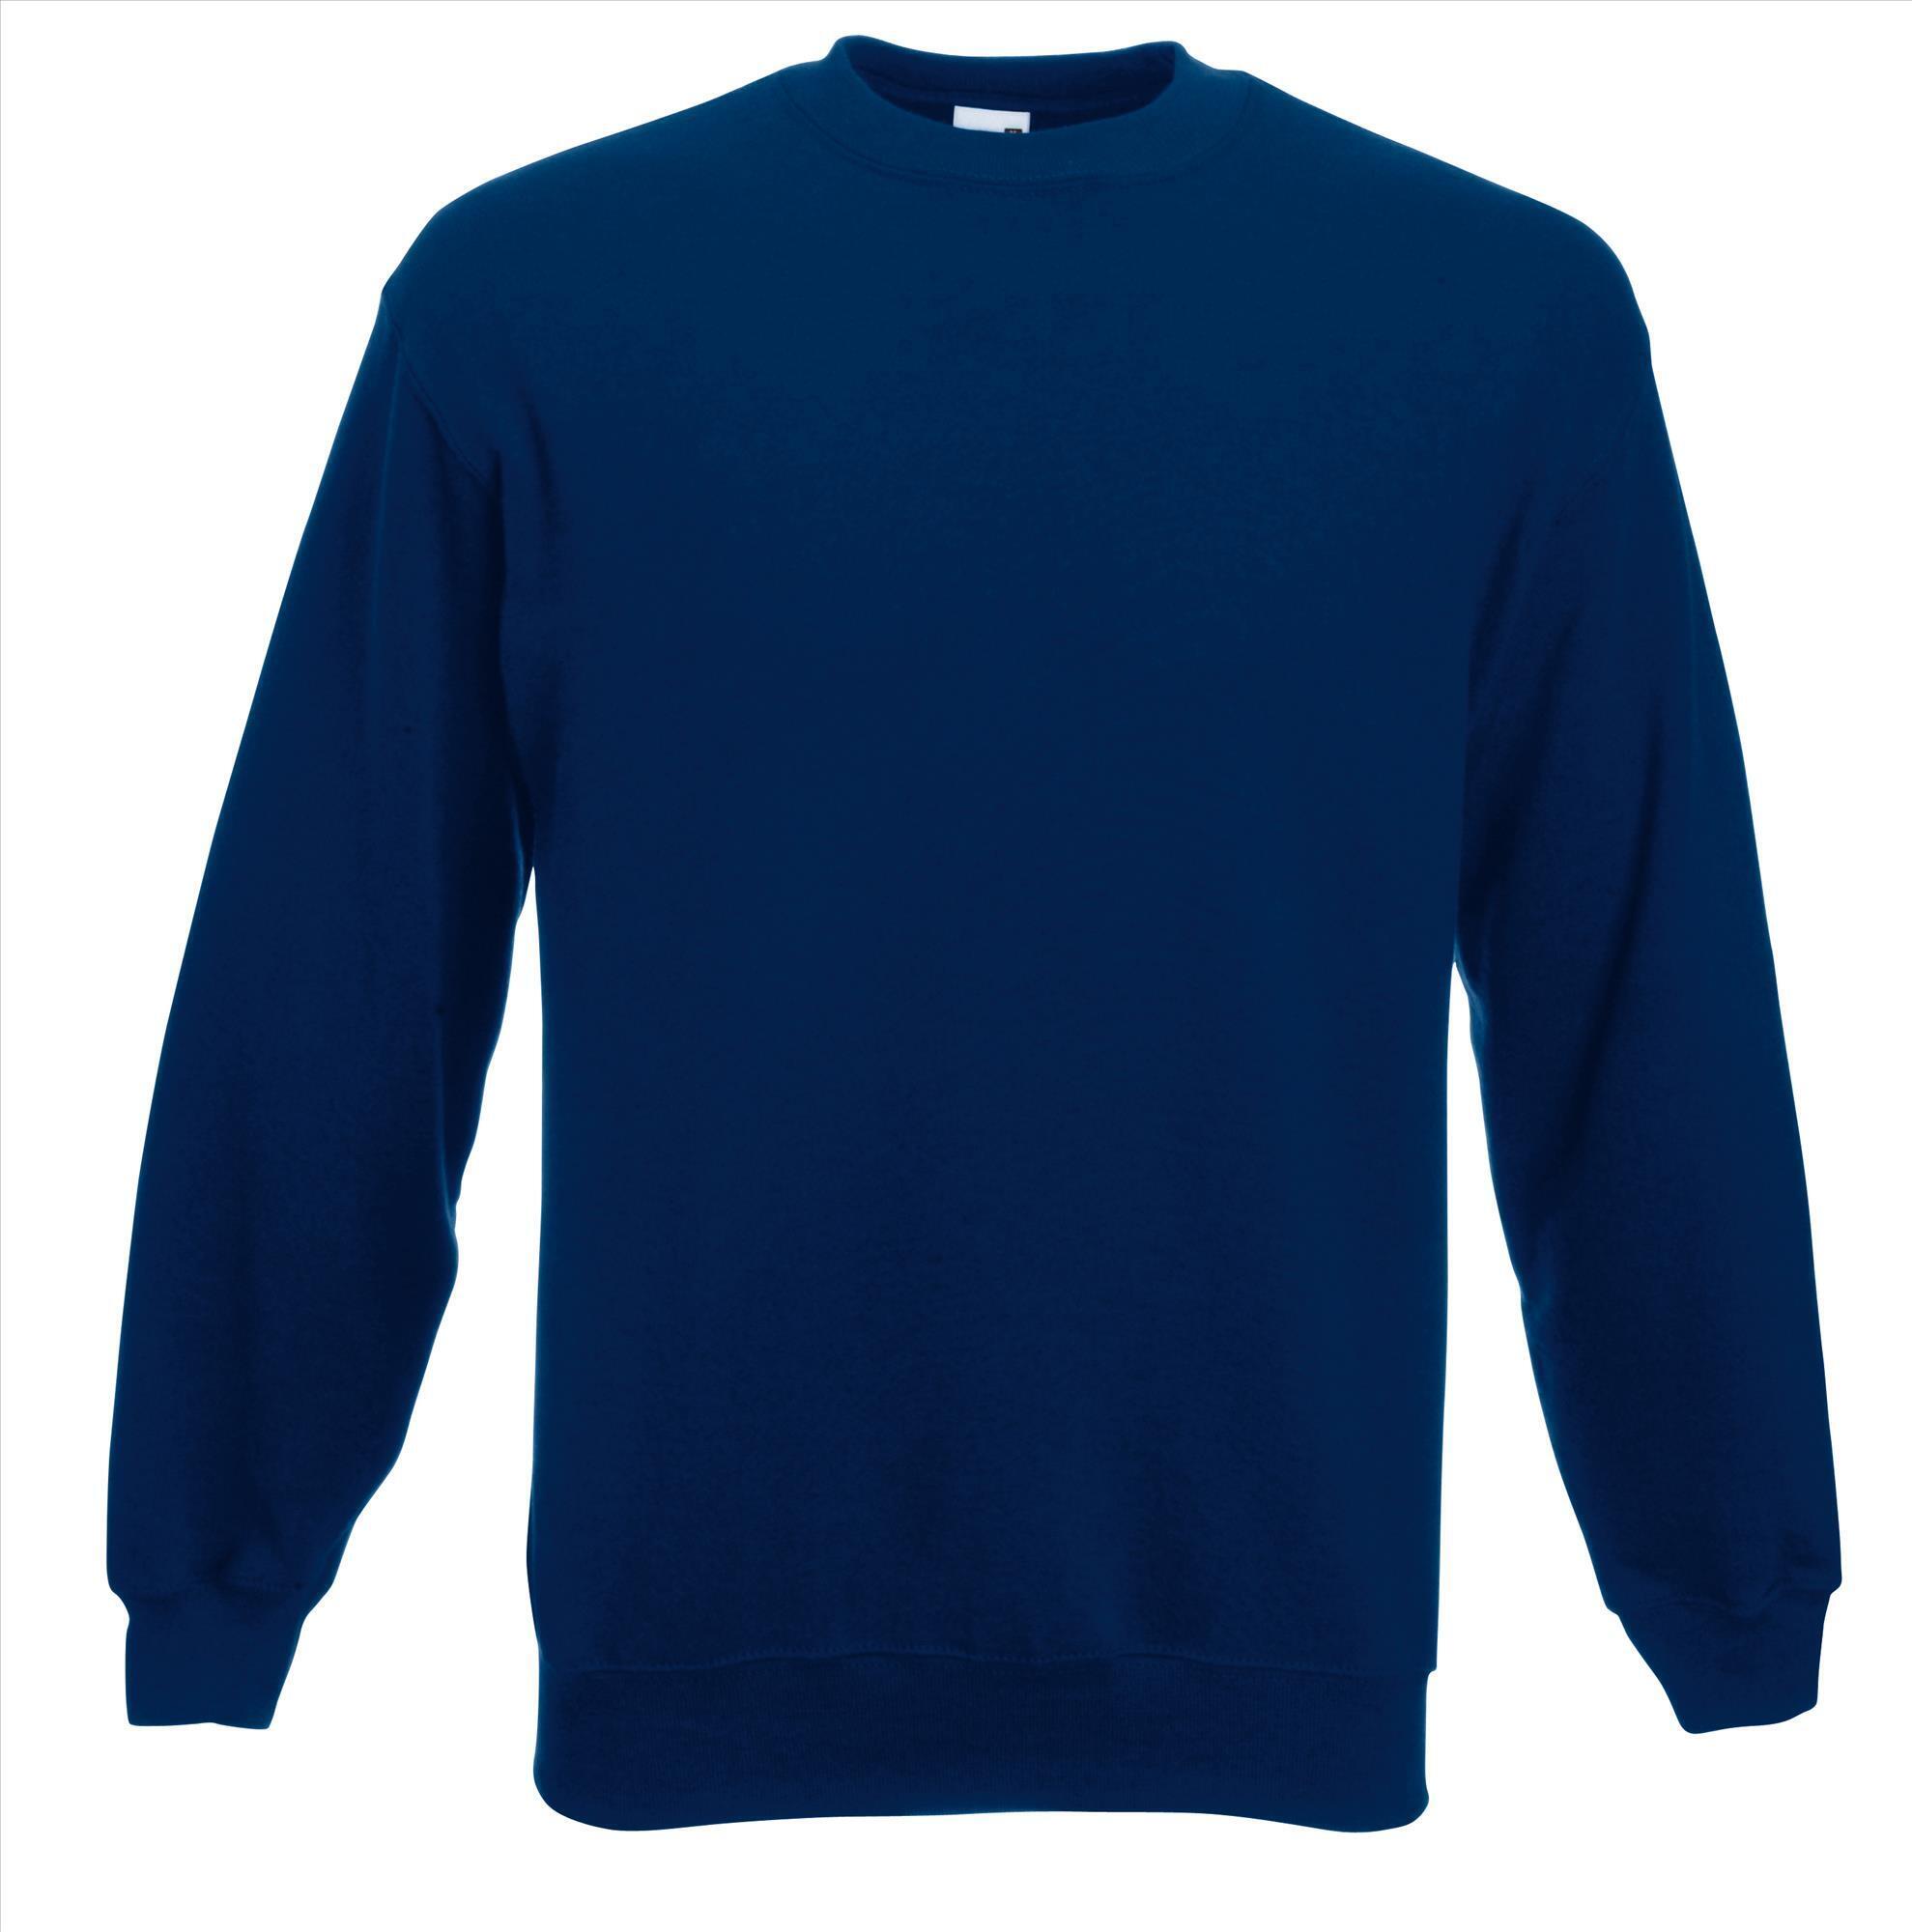 Marine blauwe trui sweater klassieke uitvoering unisex